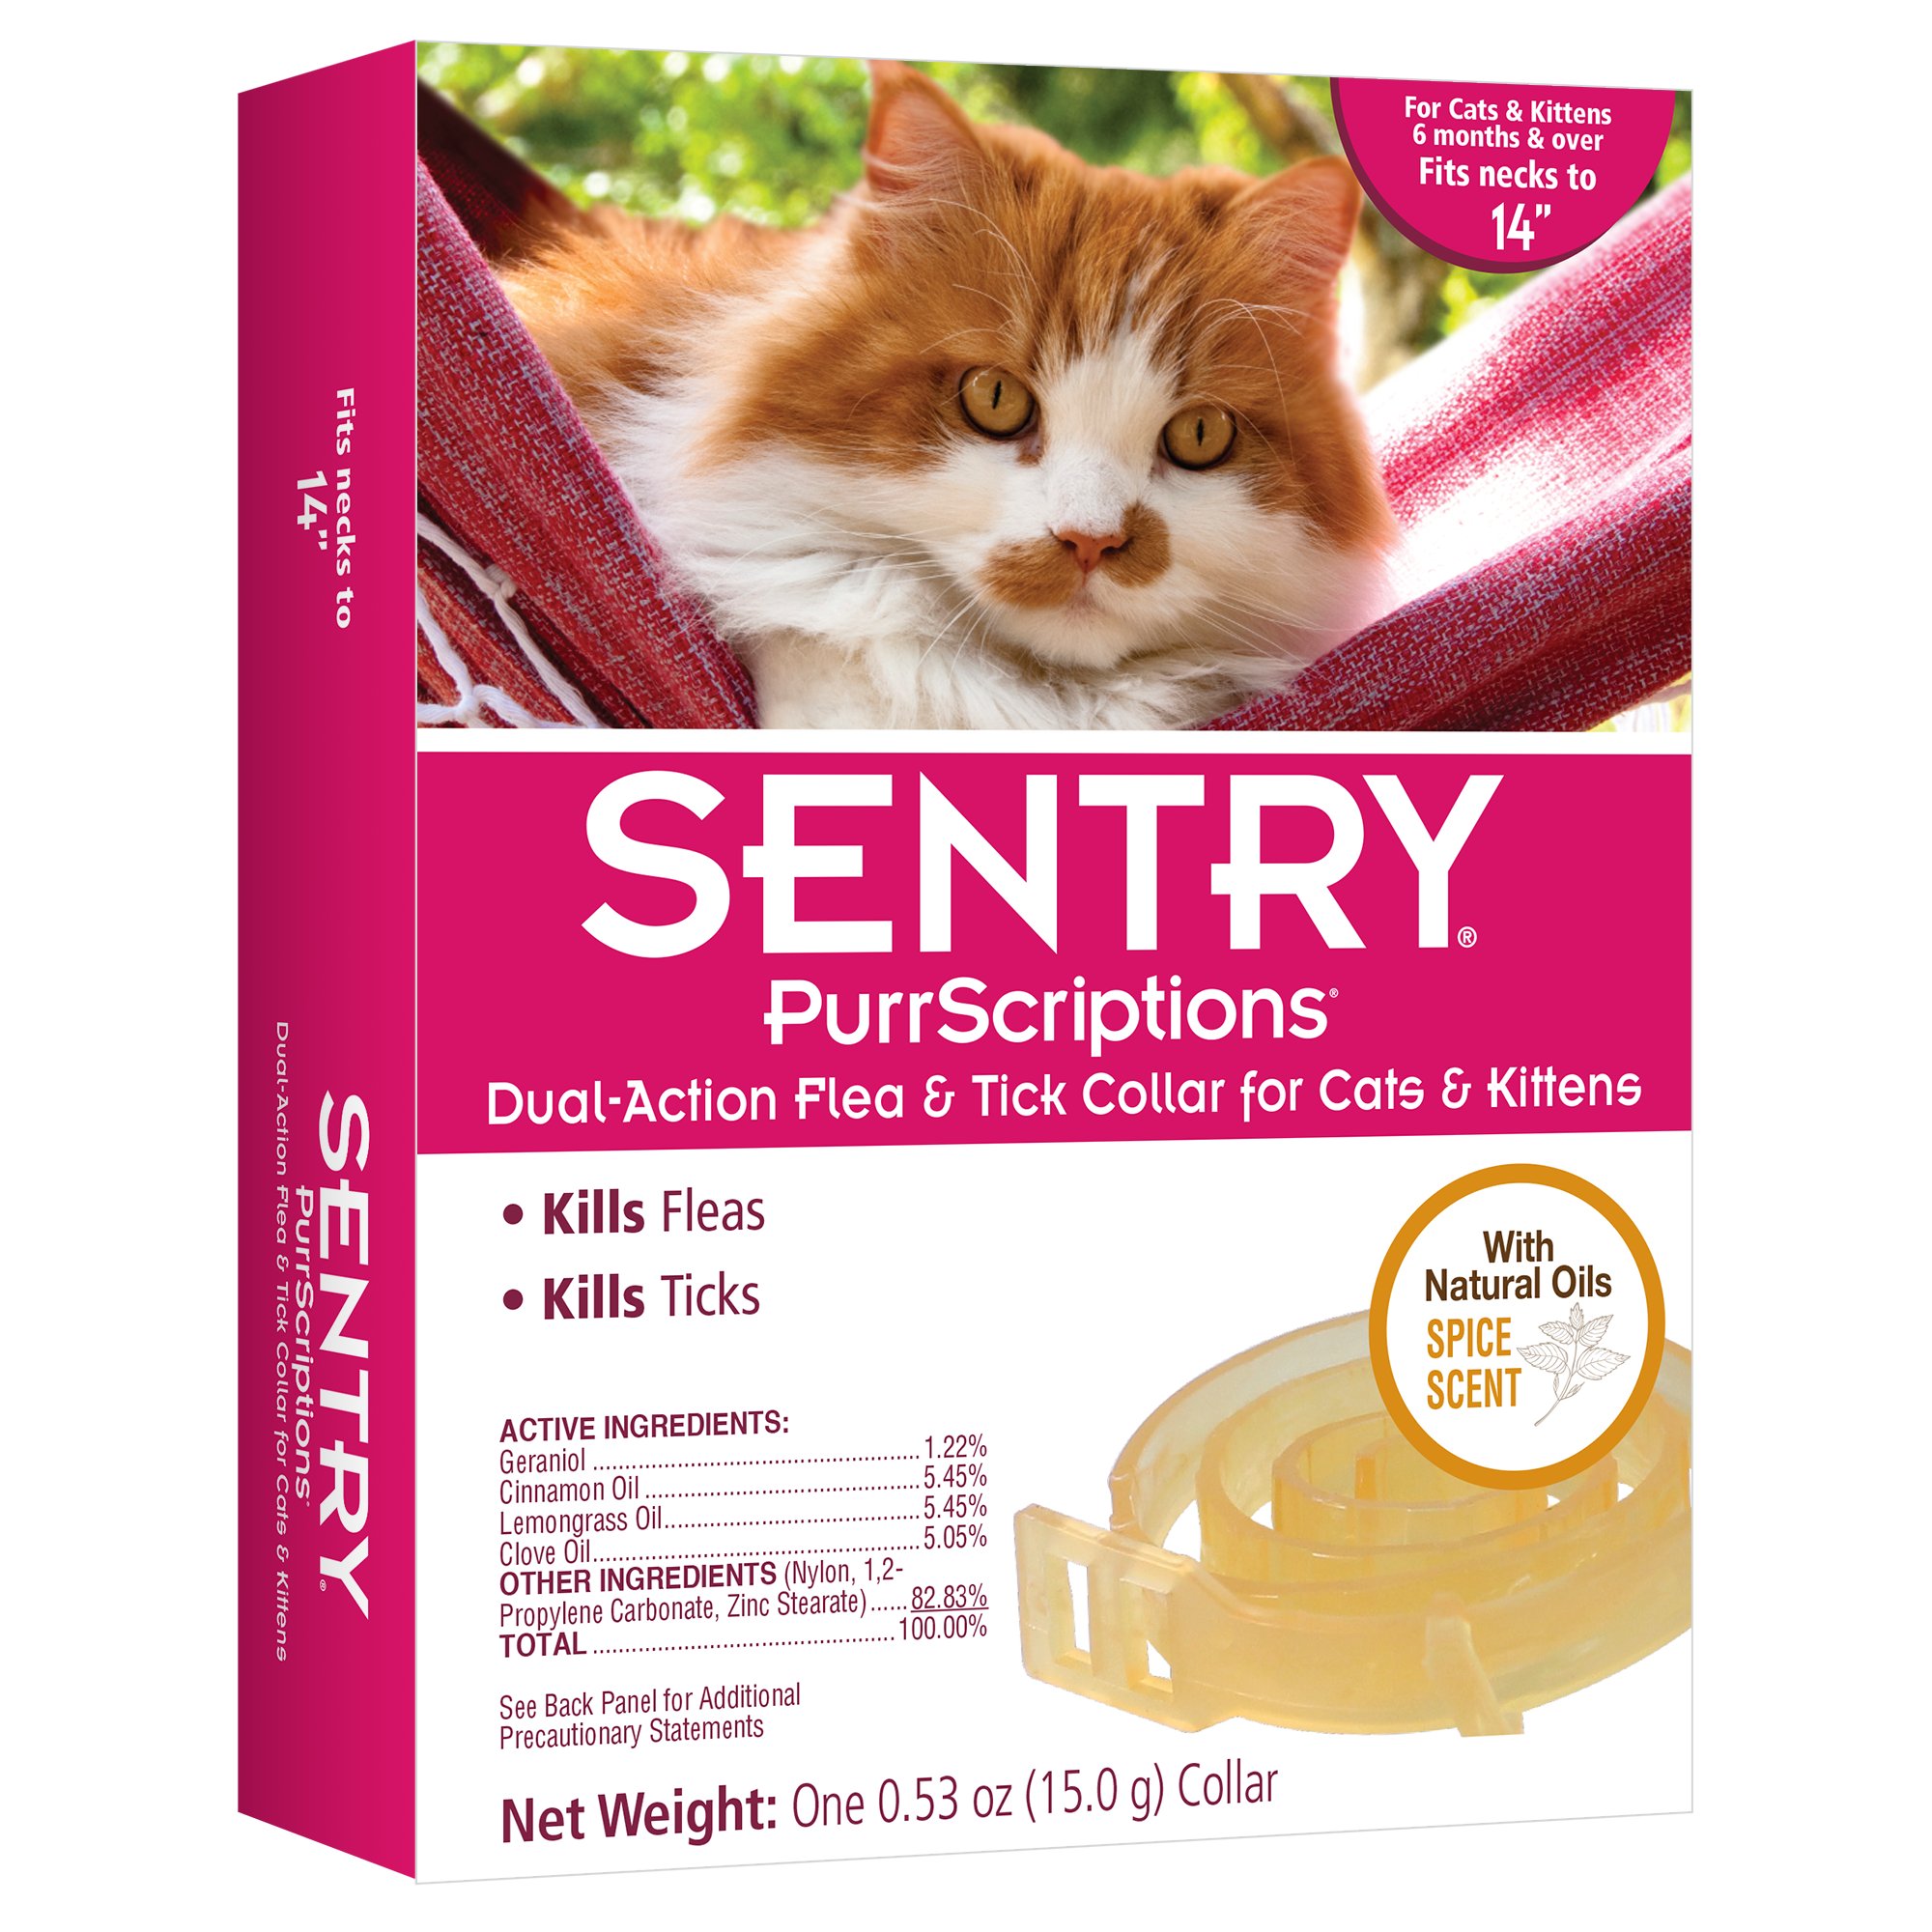 Sentry PurrScriptions Flea & Tick Cat Collars Petco